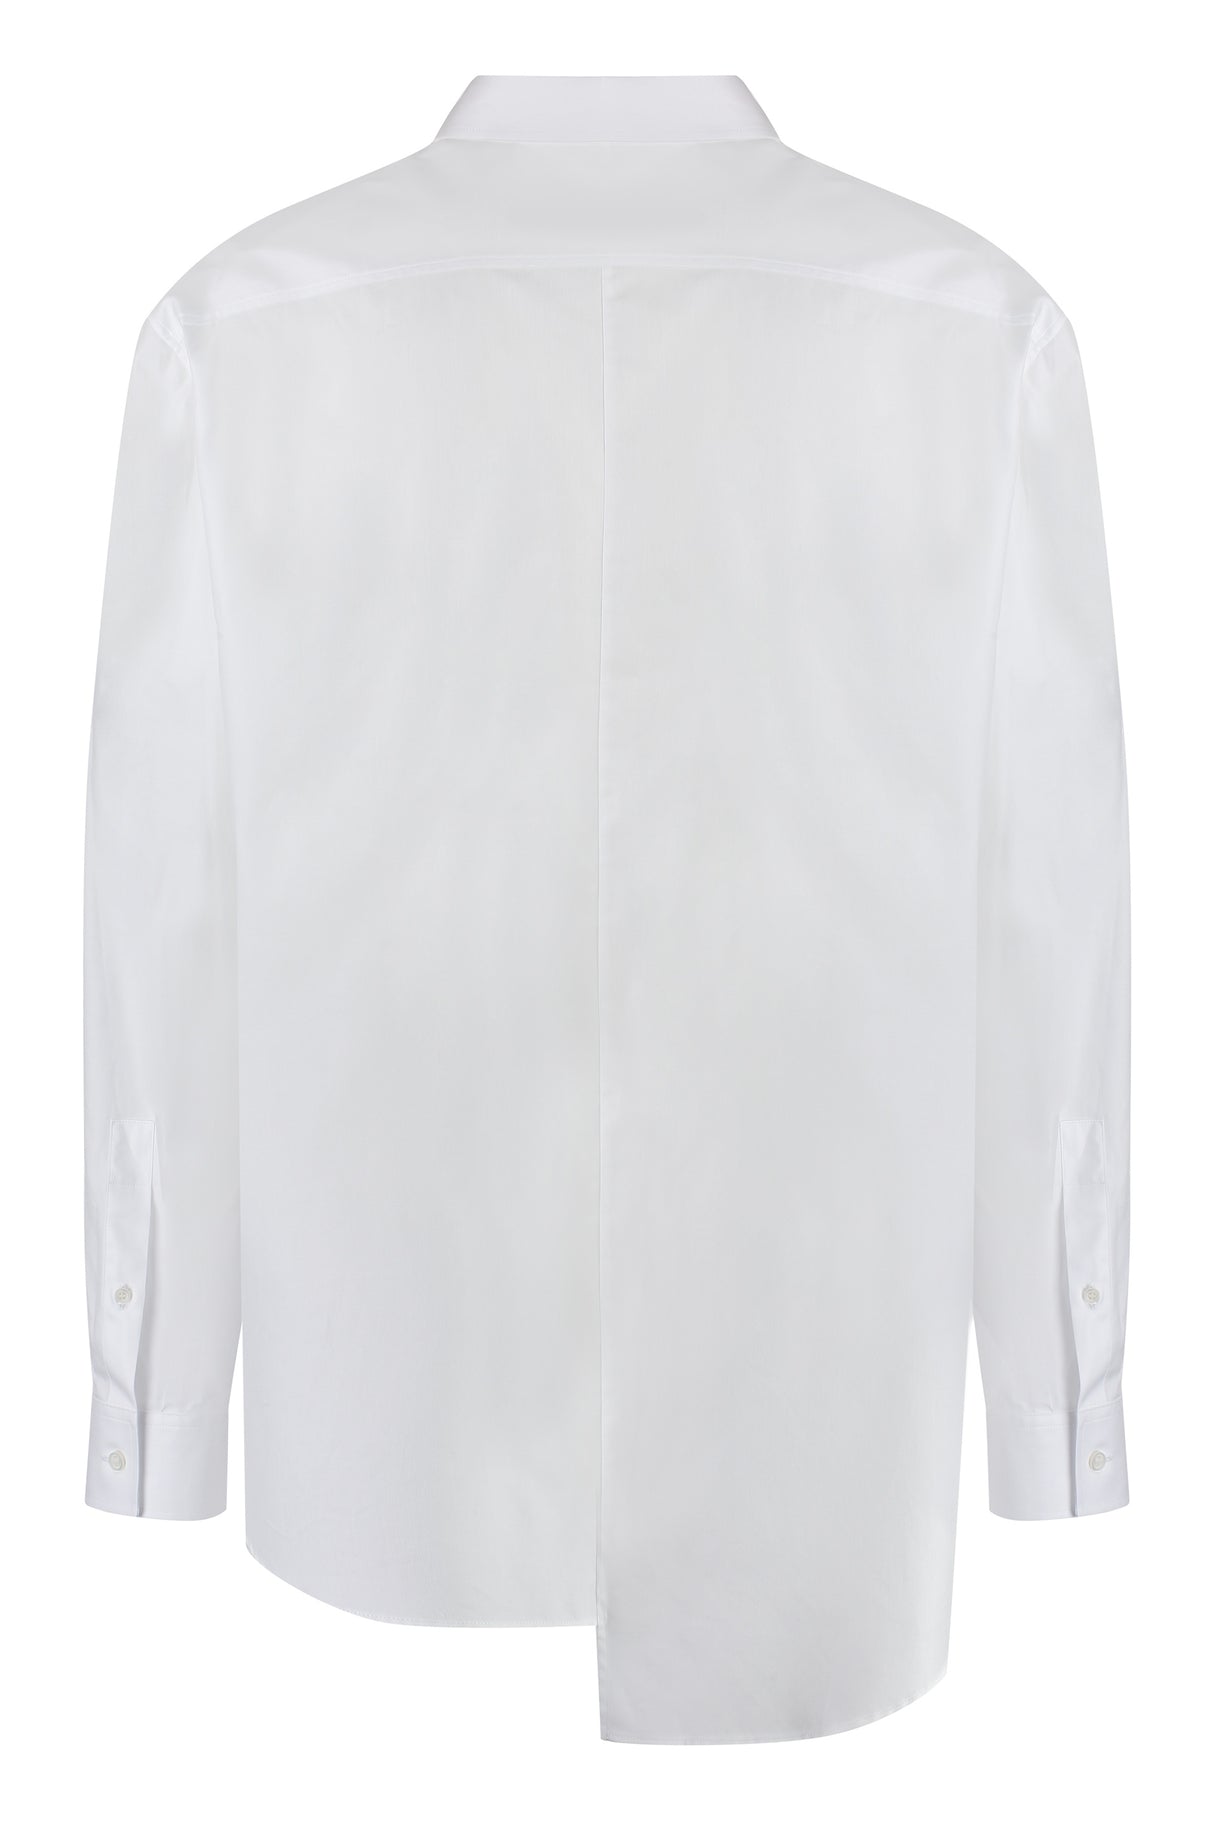 Men's Asymmetrical White Cotton Shirt